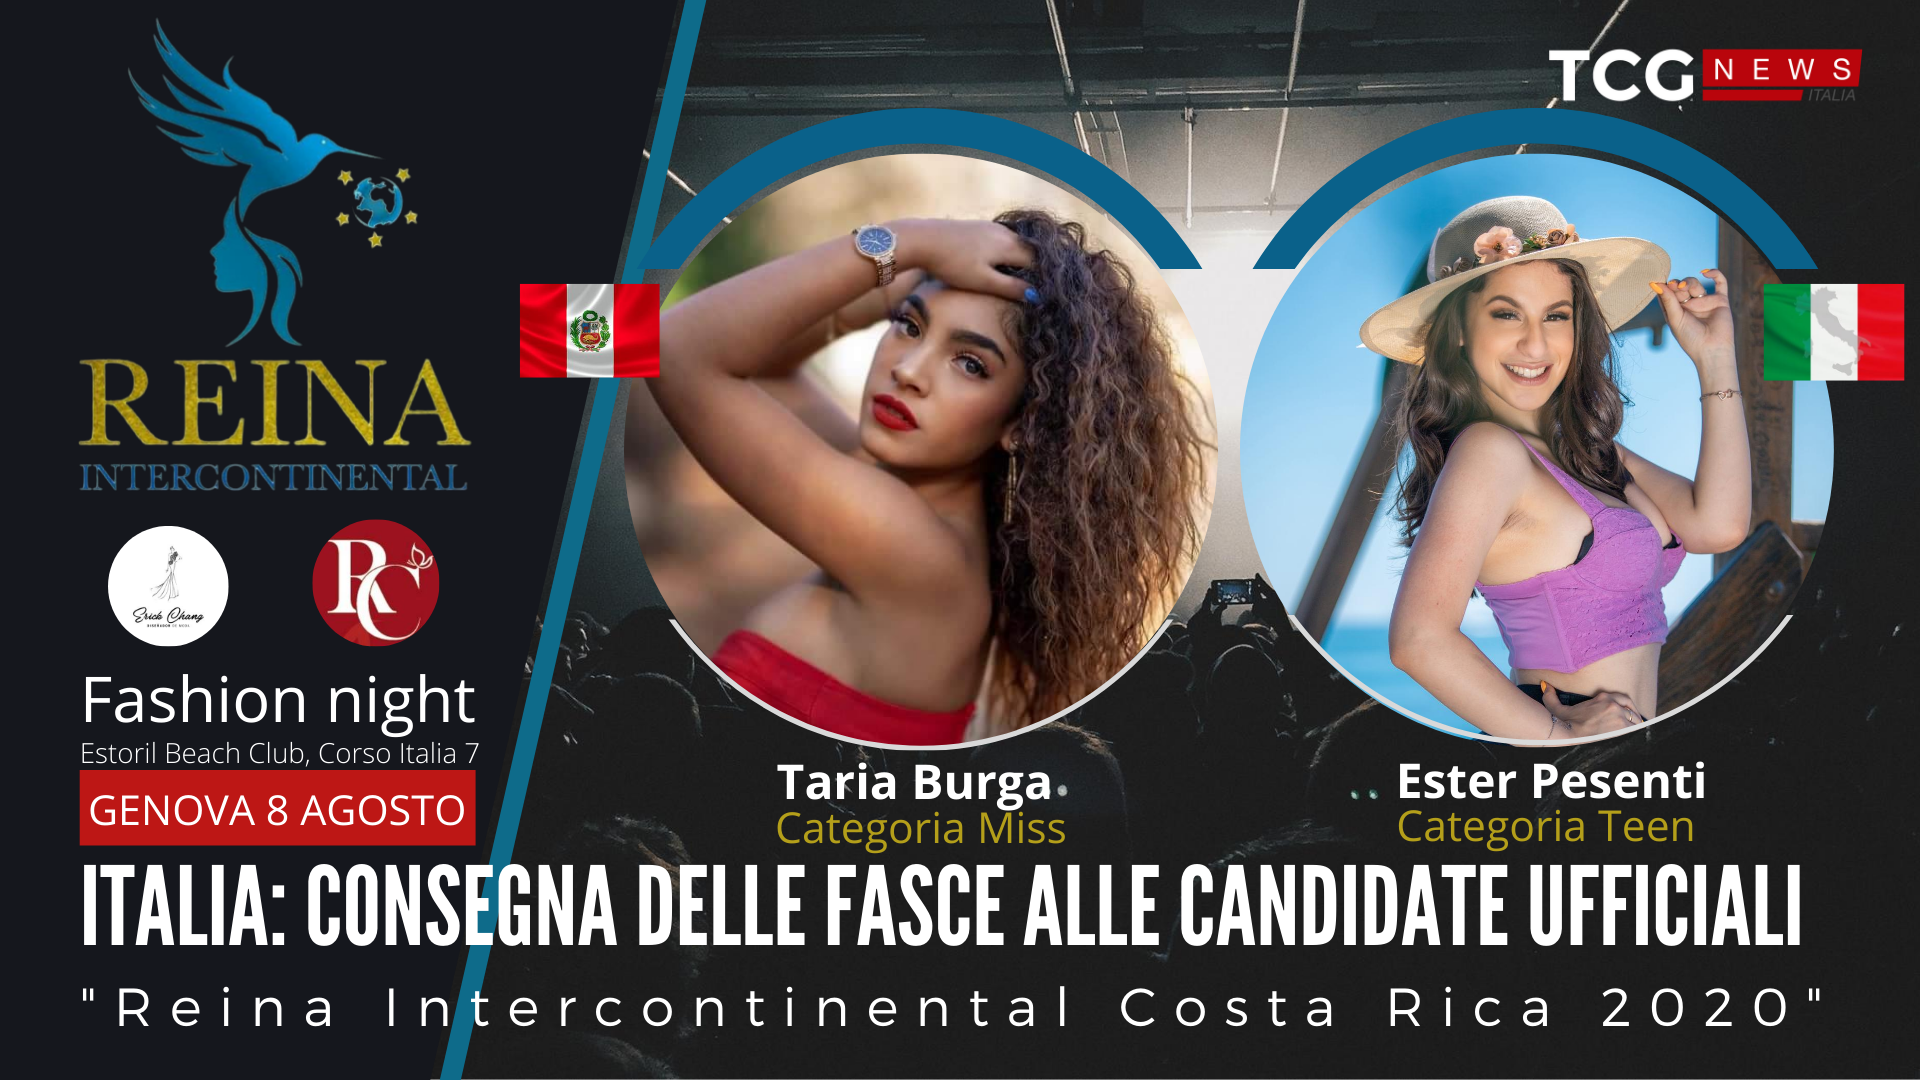 ITALIA: Consegna delle fasce alle candidate ufficiali “Reina Intercontinental 2020”